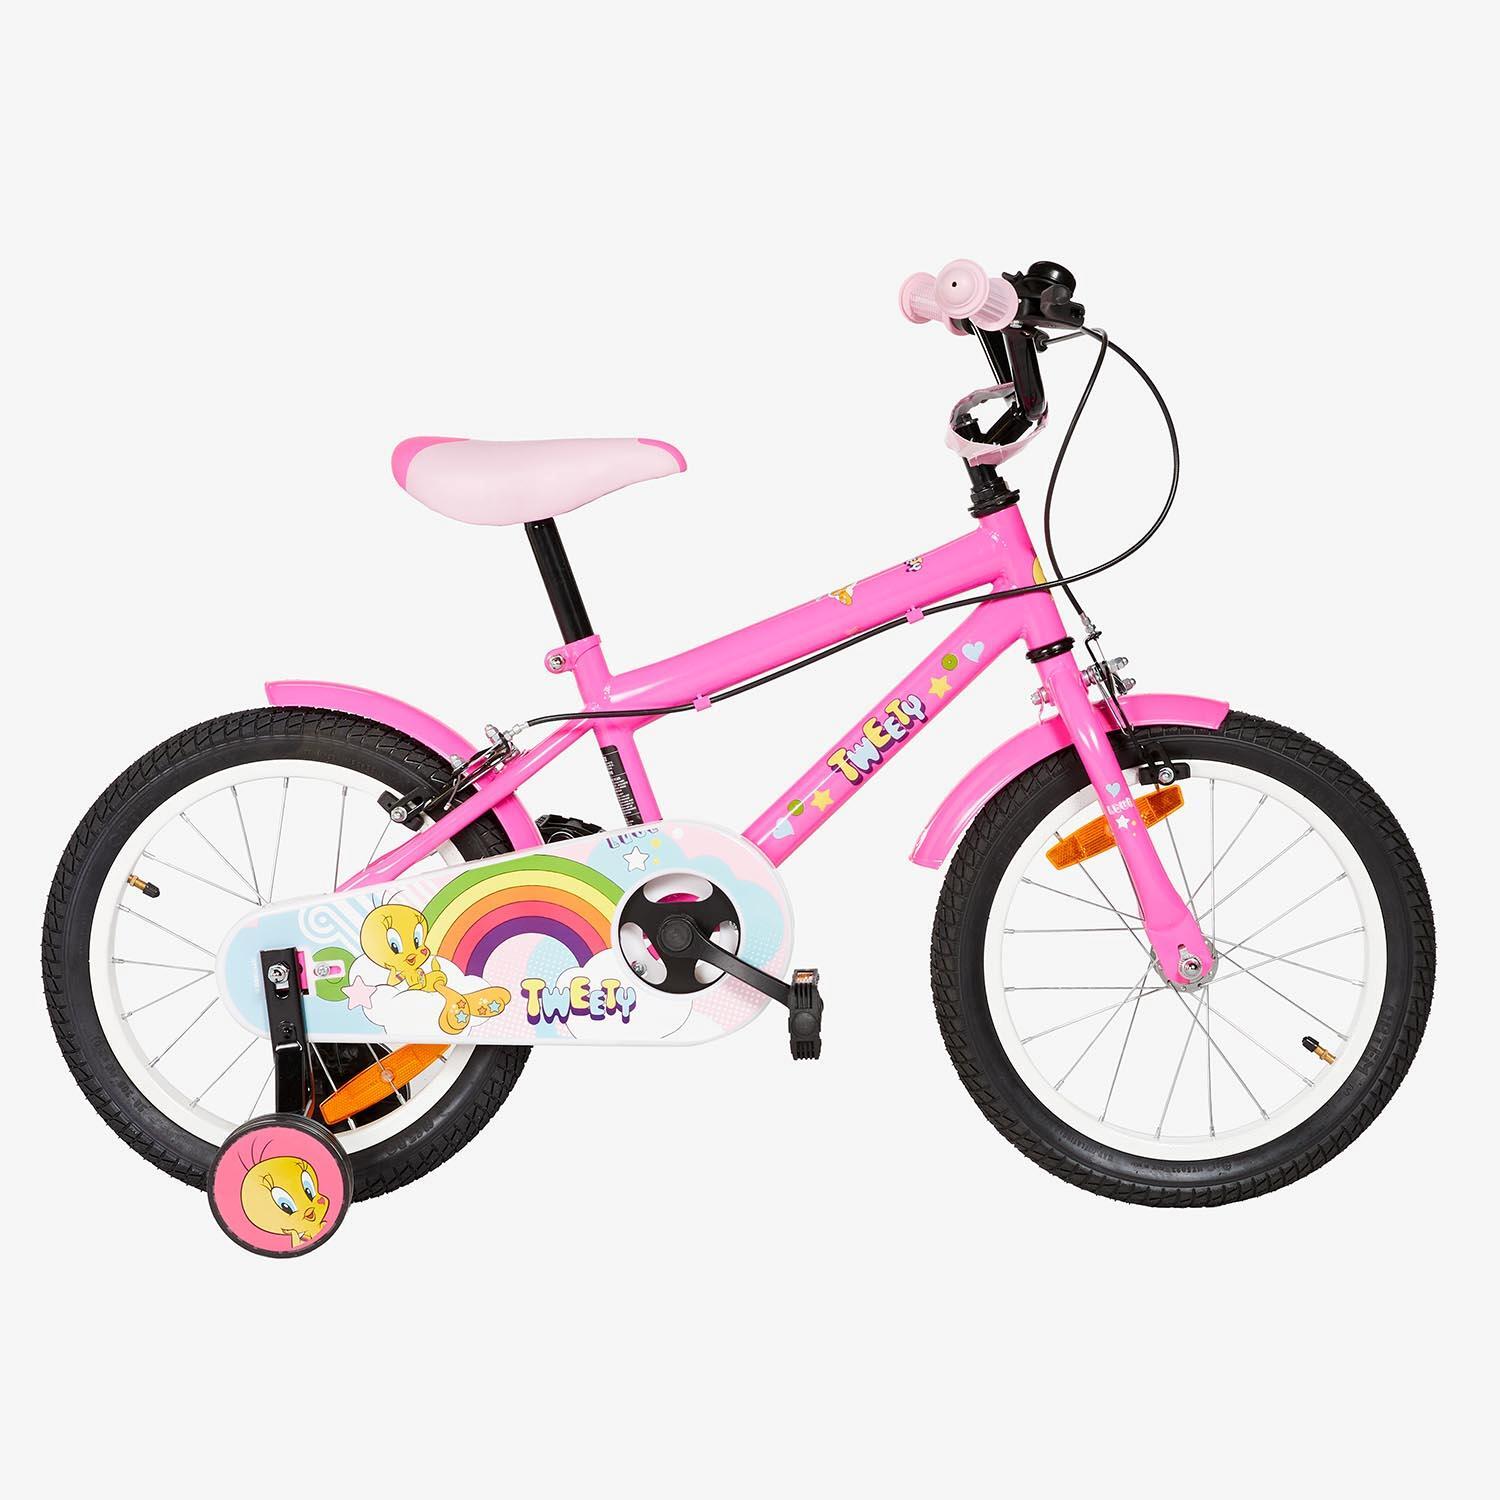 Bicicleta Criança Roda 16 5-7 Anos - 1 un - Barbie